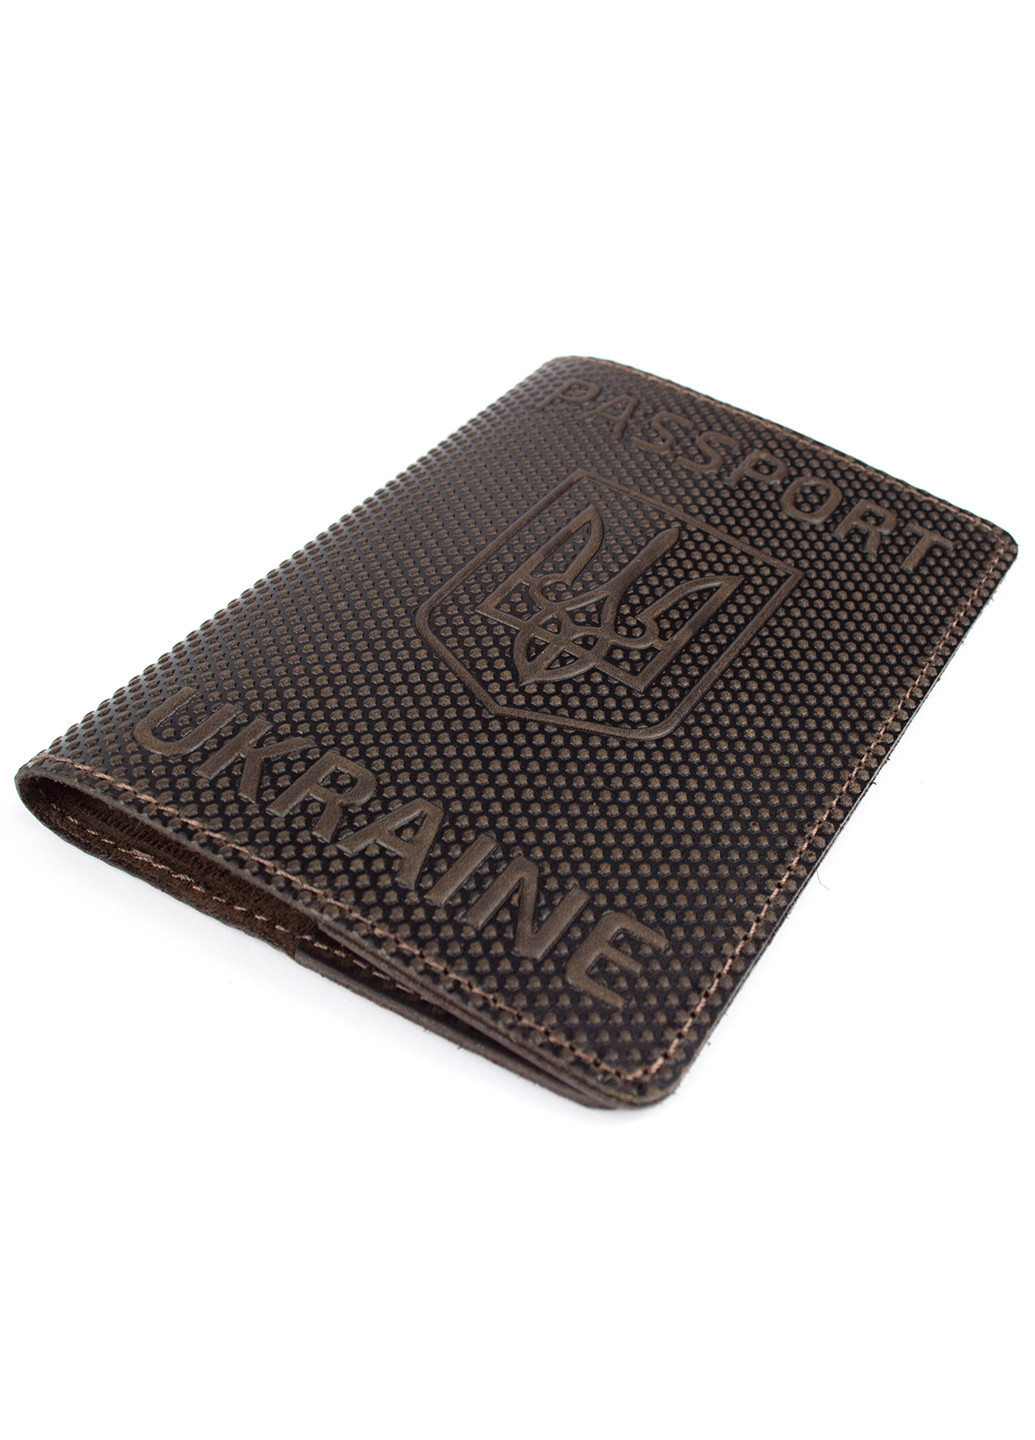 Подарочный набор №35: обложка на паспорт "Герб" + обложка на загранпаспорт "Карта" (коричневый) HandyCover (257475246)